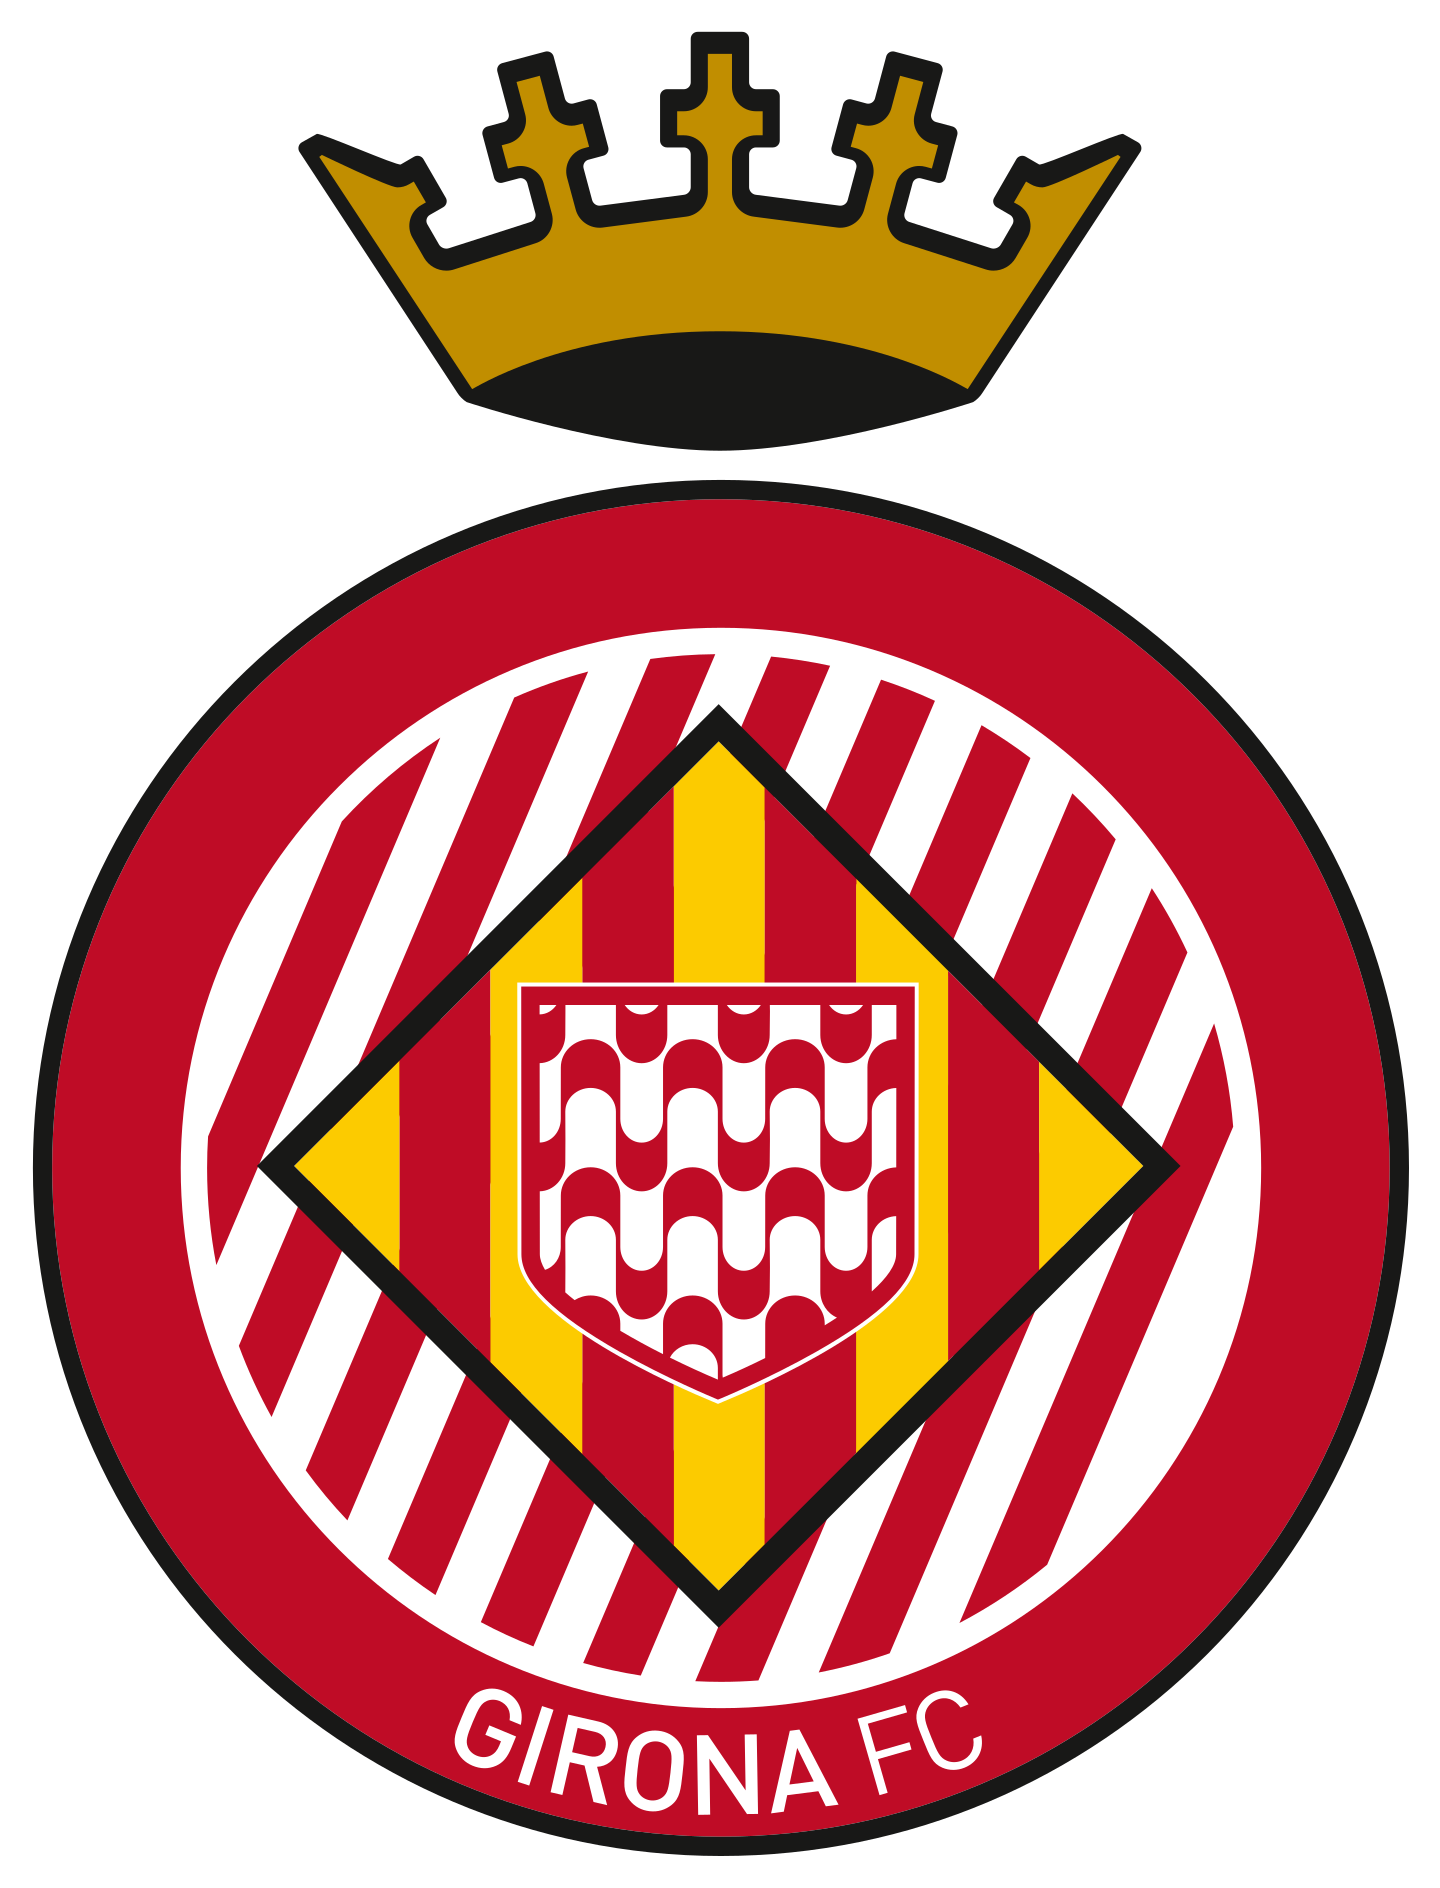 girona fc logo 2 - Girona FC Logo